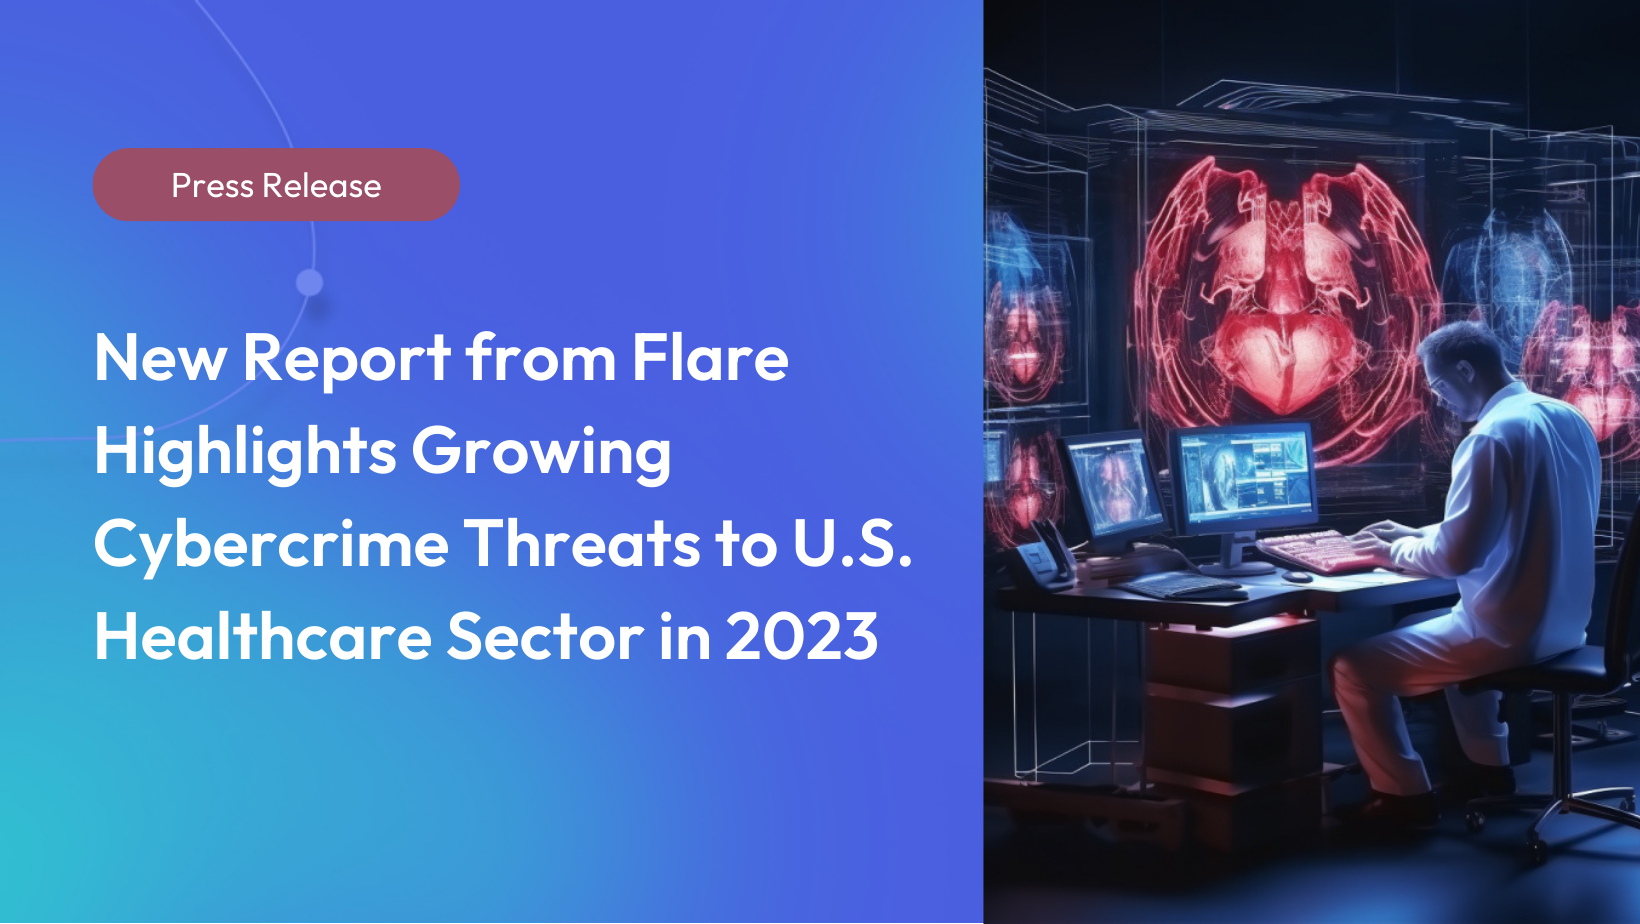 Un nouveau rapport de Flare met en évidence les menaces croissantes de cybercriminalité pour le secteur de la santé aux États-Unis en 2023